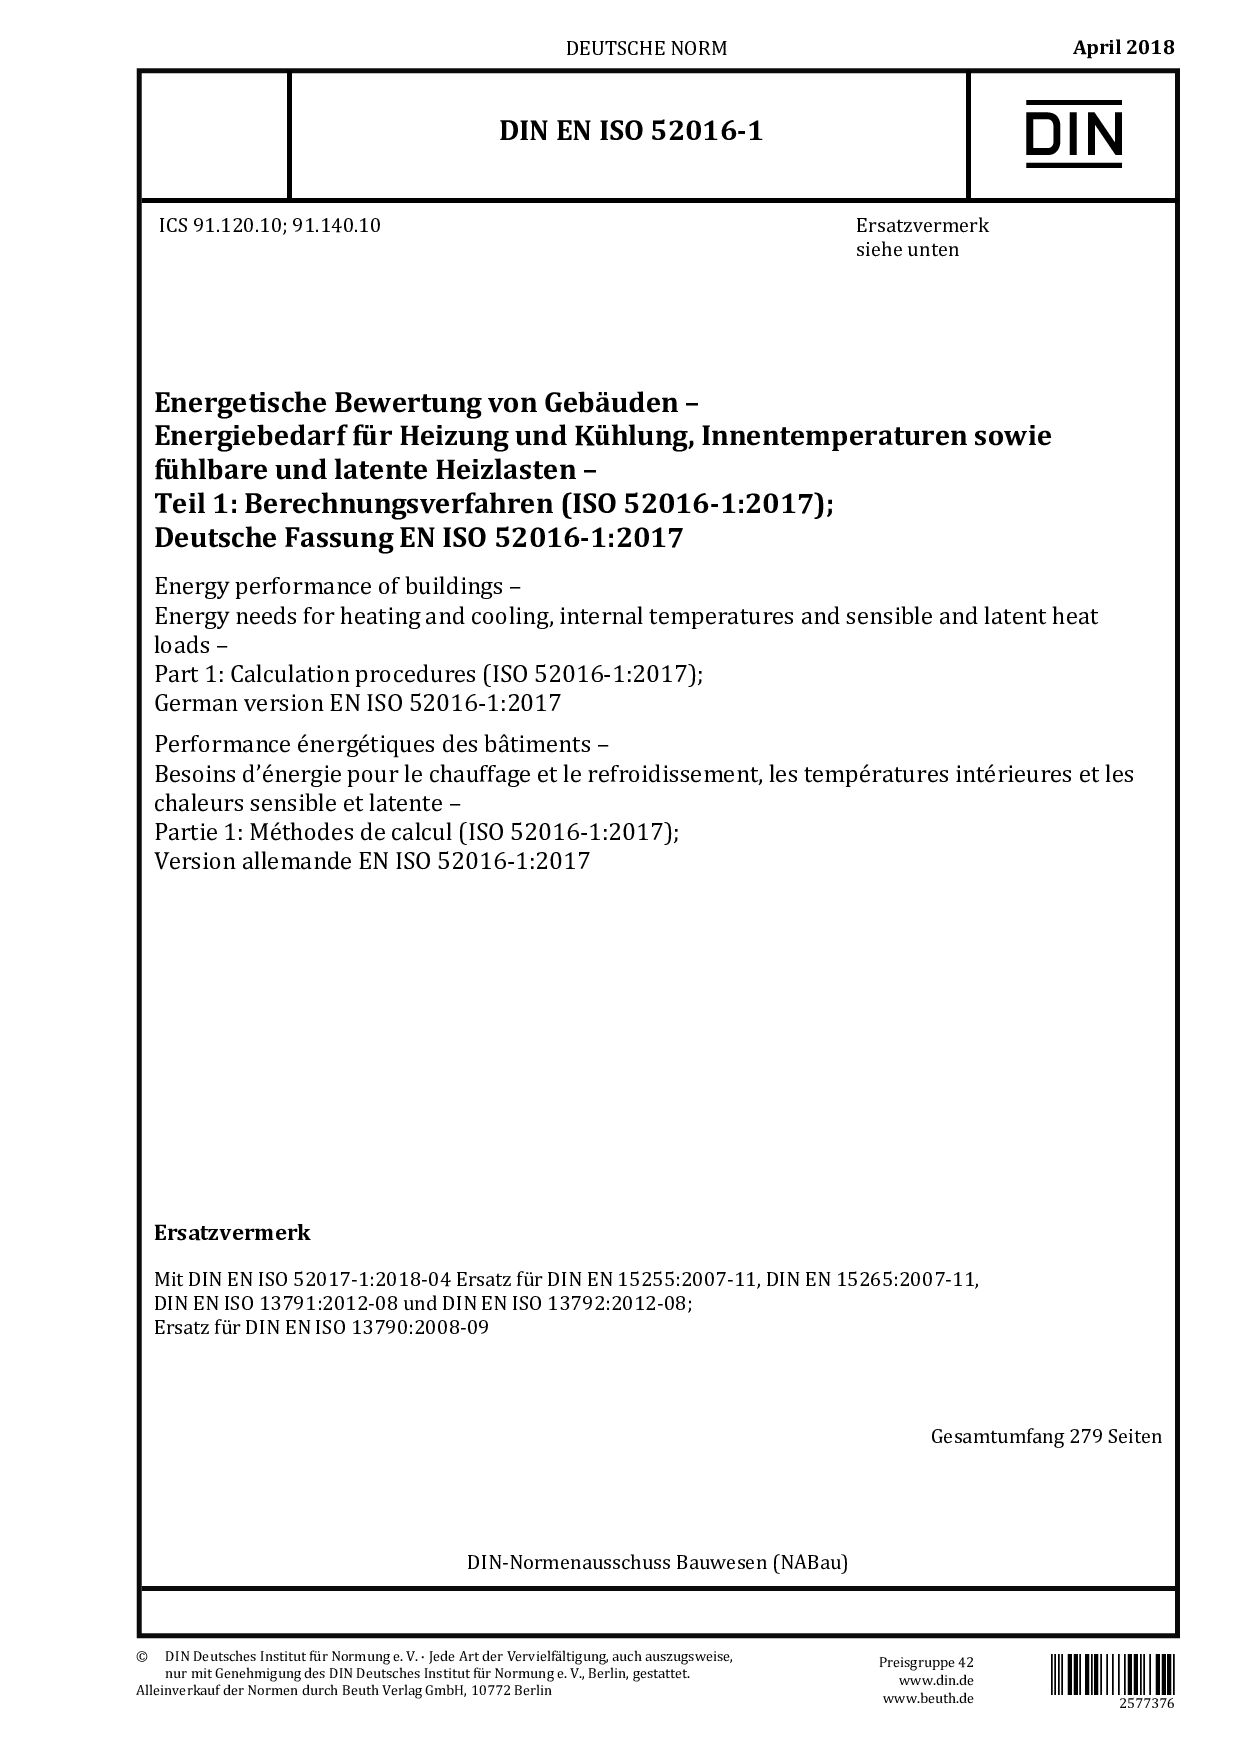 DIN EN ISO 52016-1:2018封面图